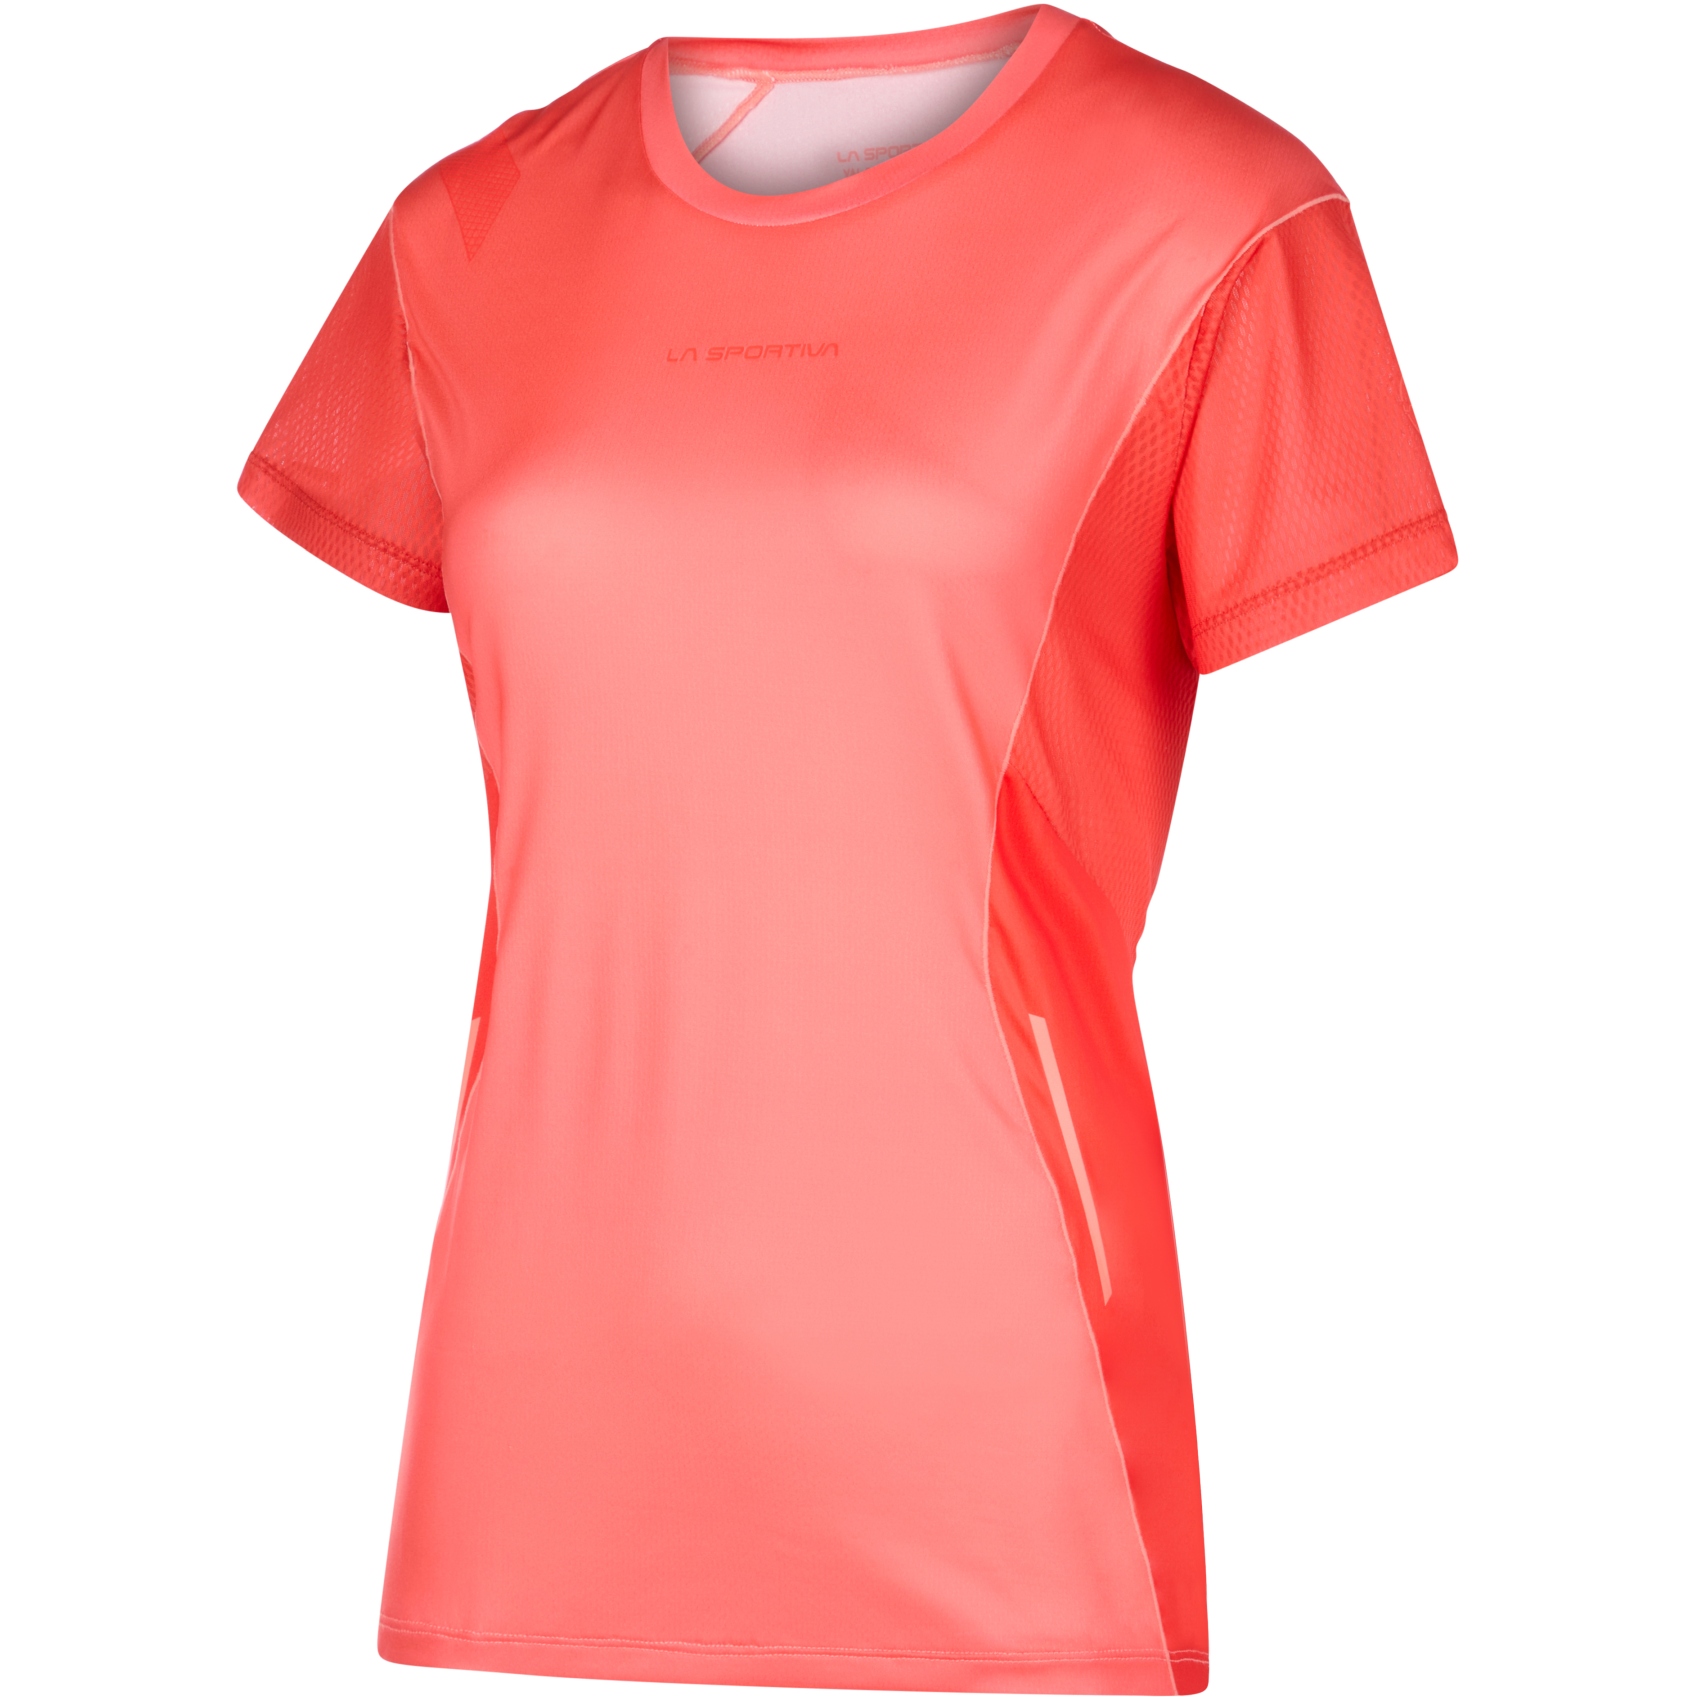 Picture of La Sportiva Resolute T-Shirt Women - Flamingo/Cherry Tomato